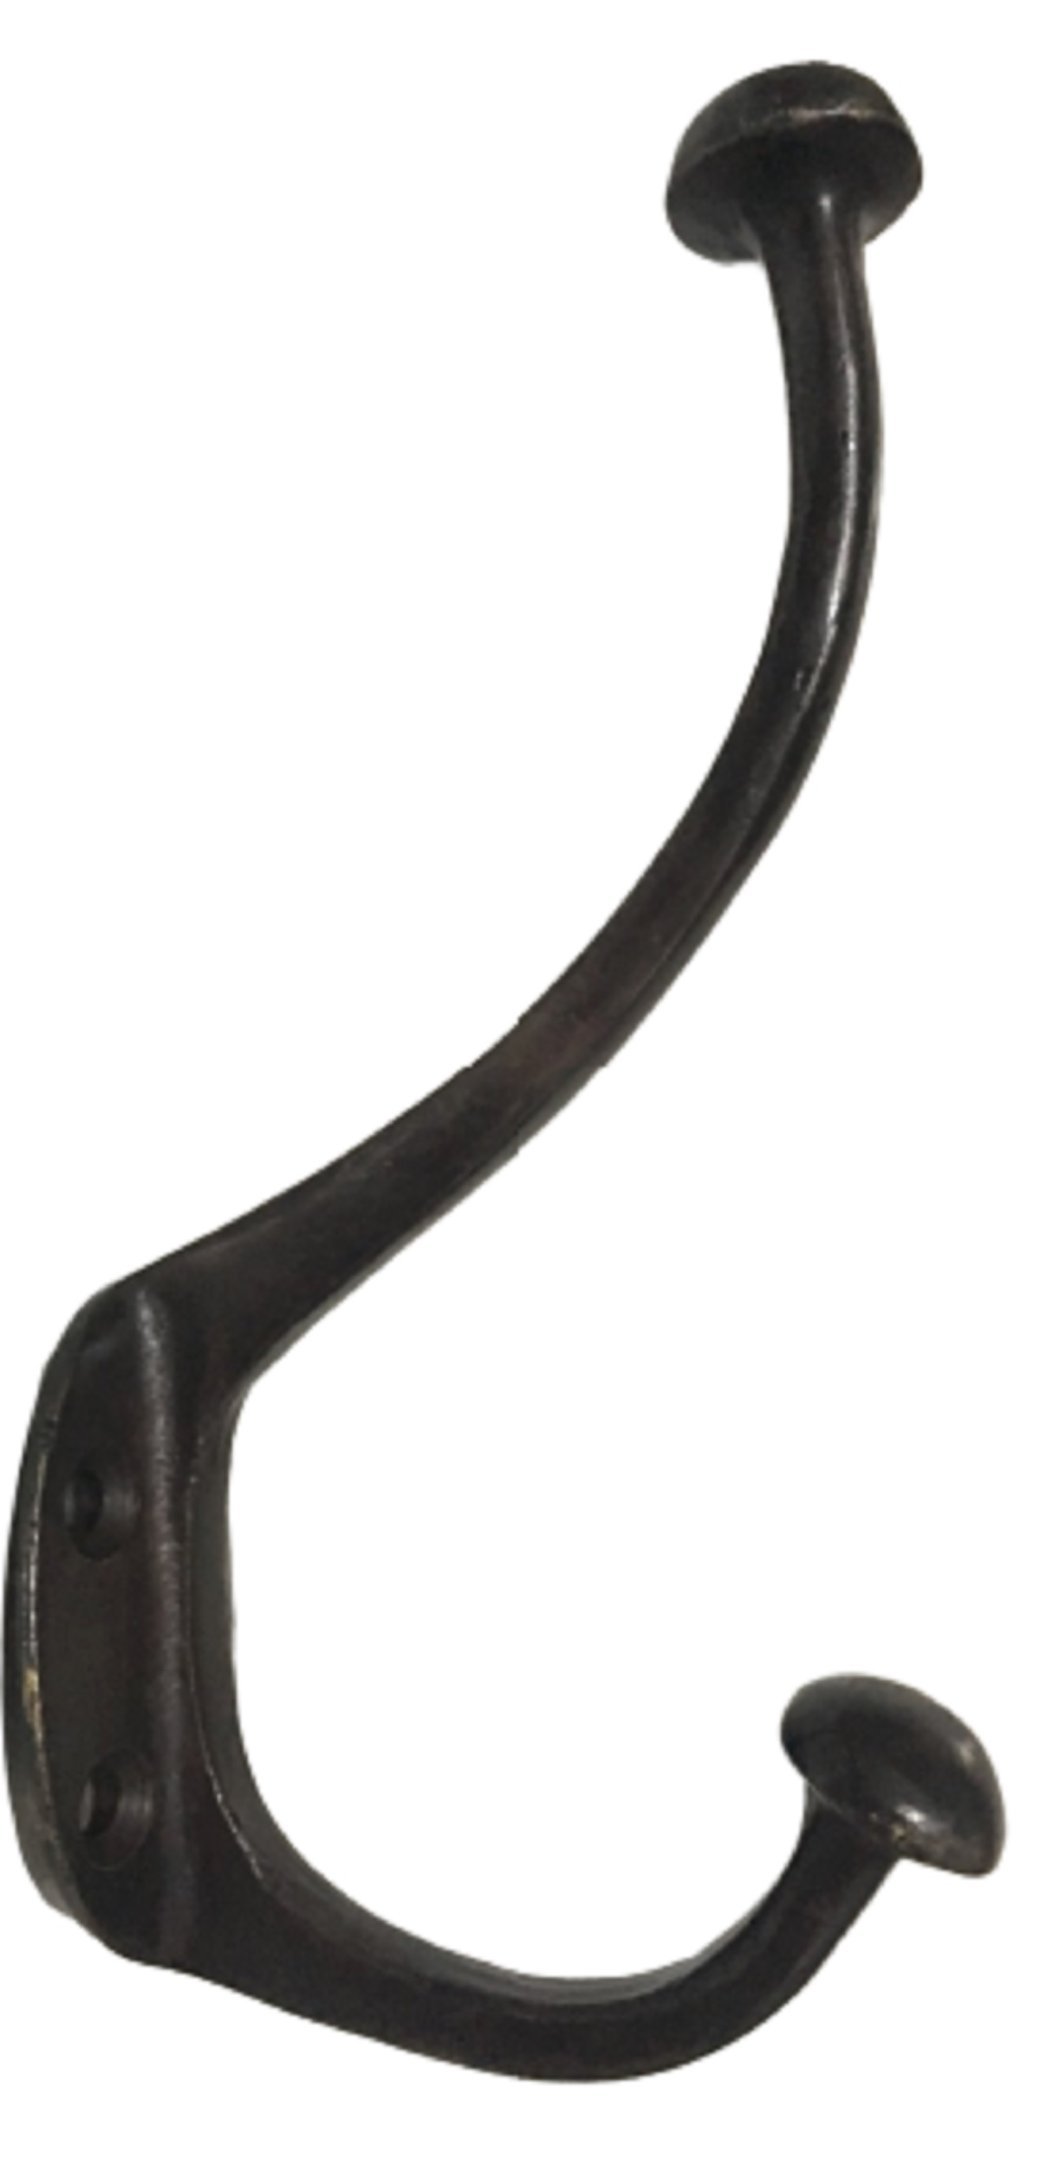 Cabide Pendurador Dois Ganchos Em Bronze Oxidado 16 Cm Lindo - 1